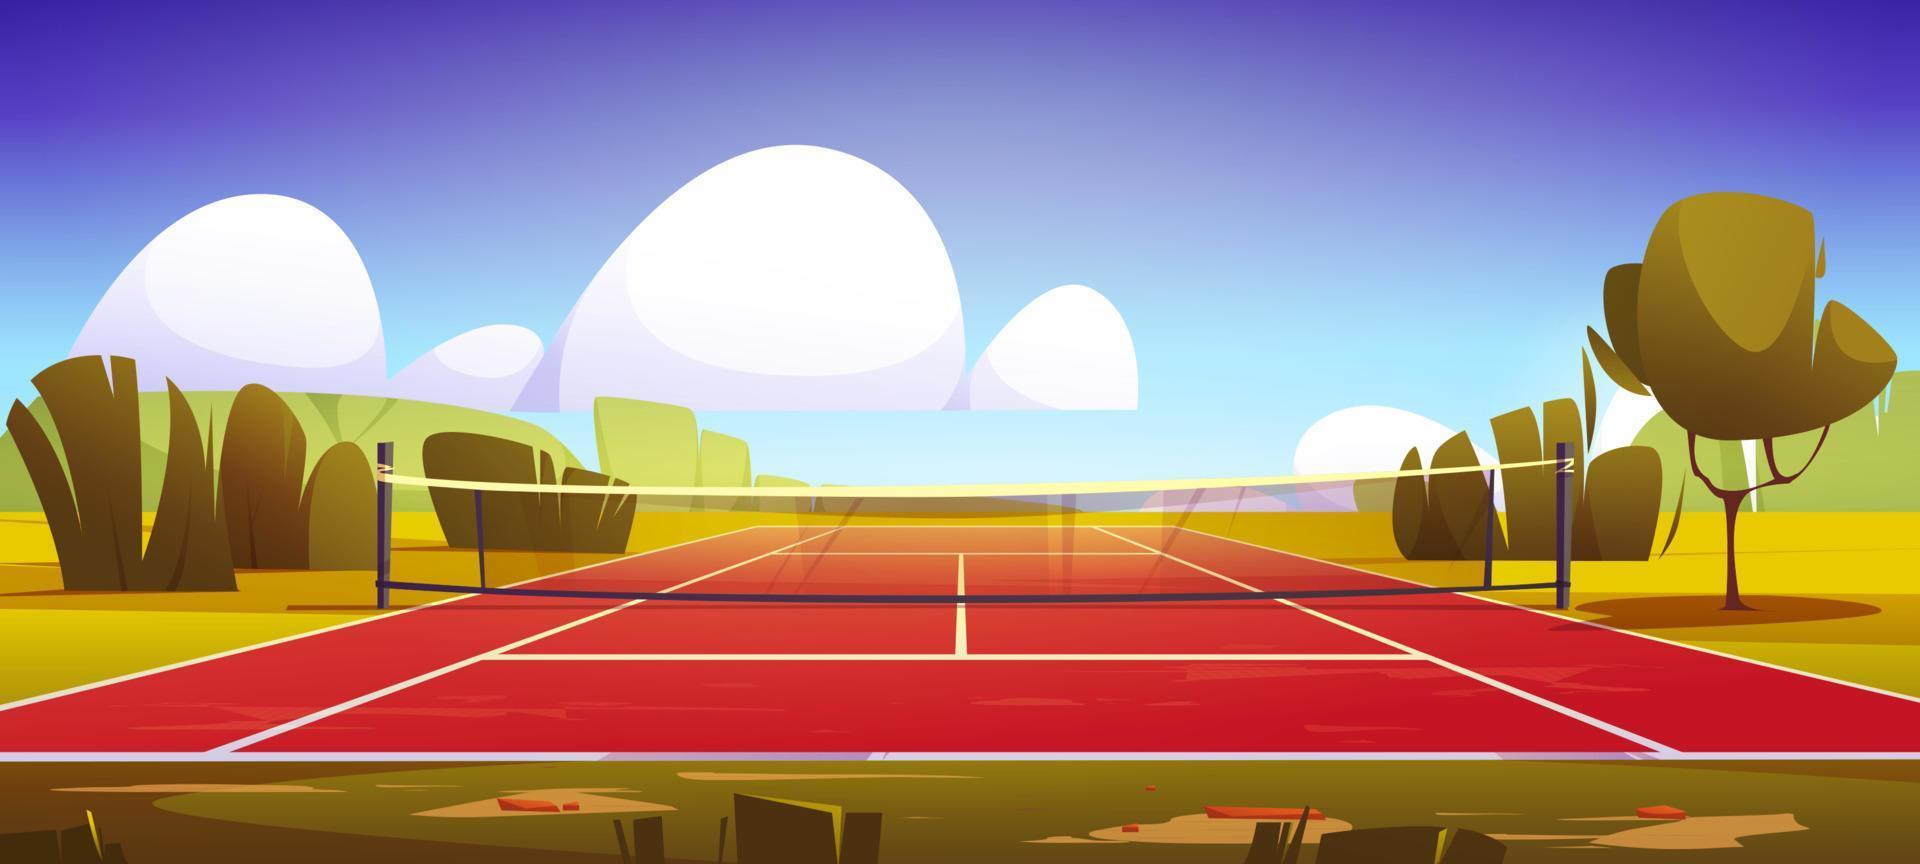 court de tennis, terrain de sport avec filet sur pelouse verte vecteur